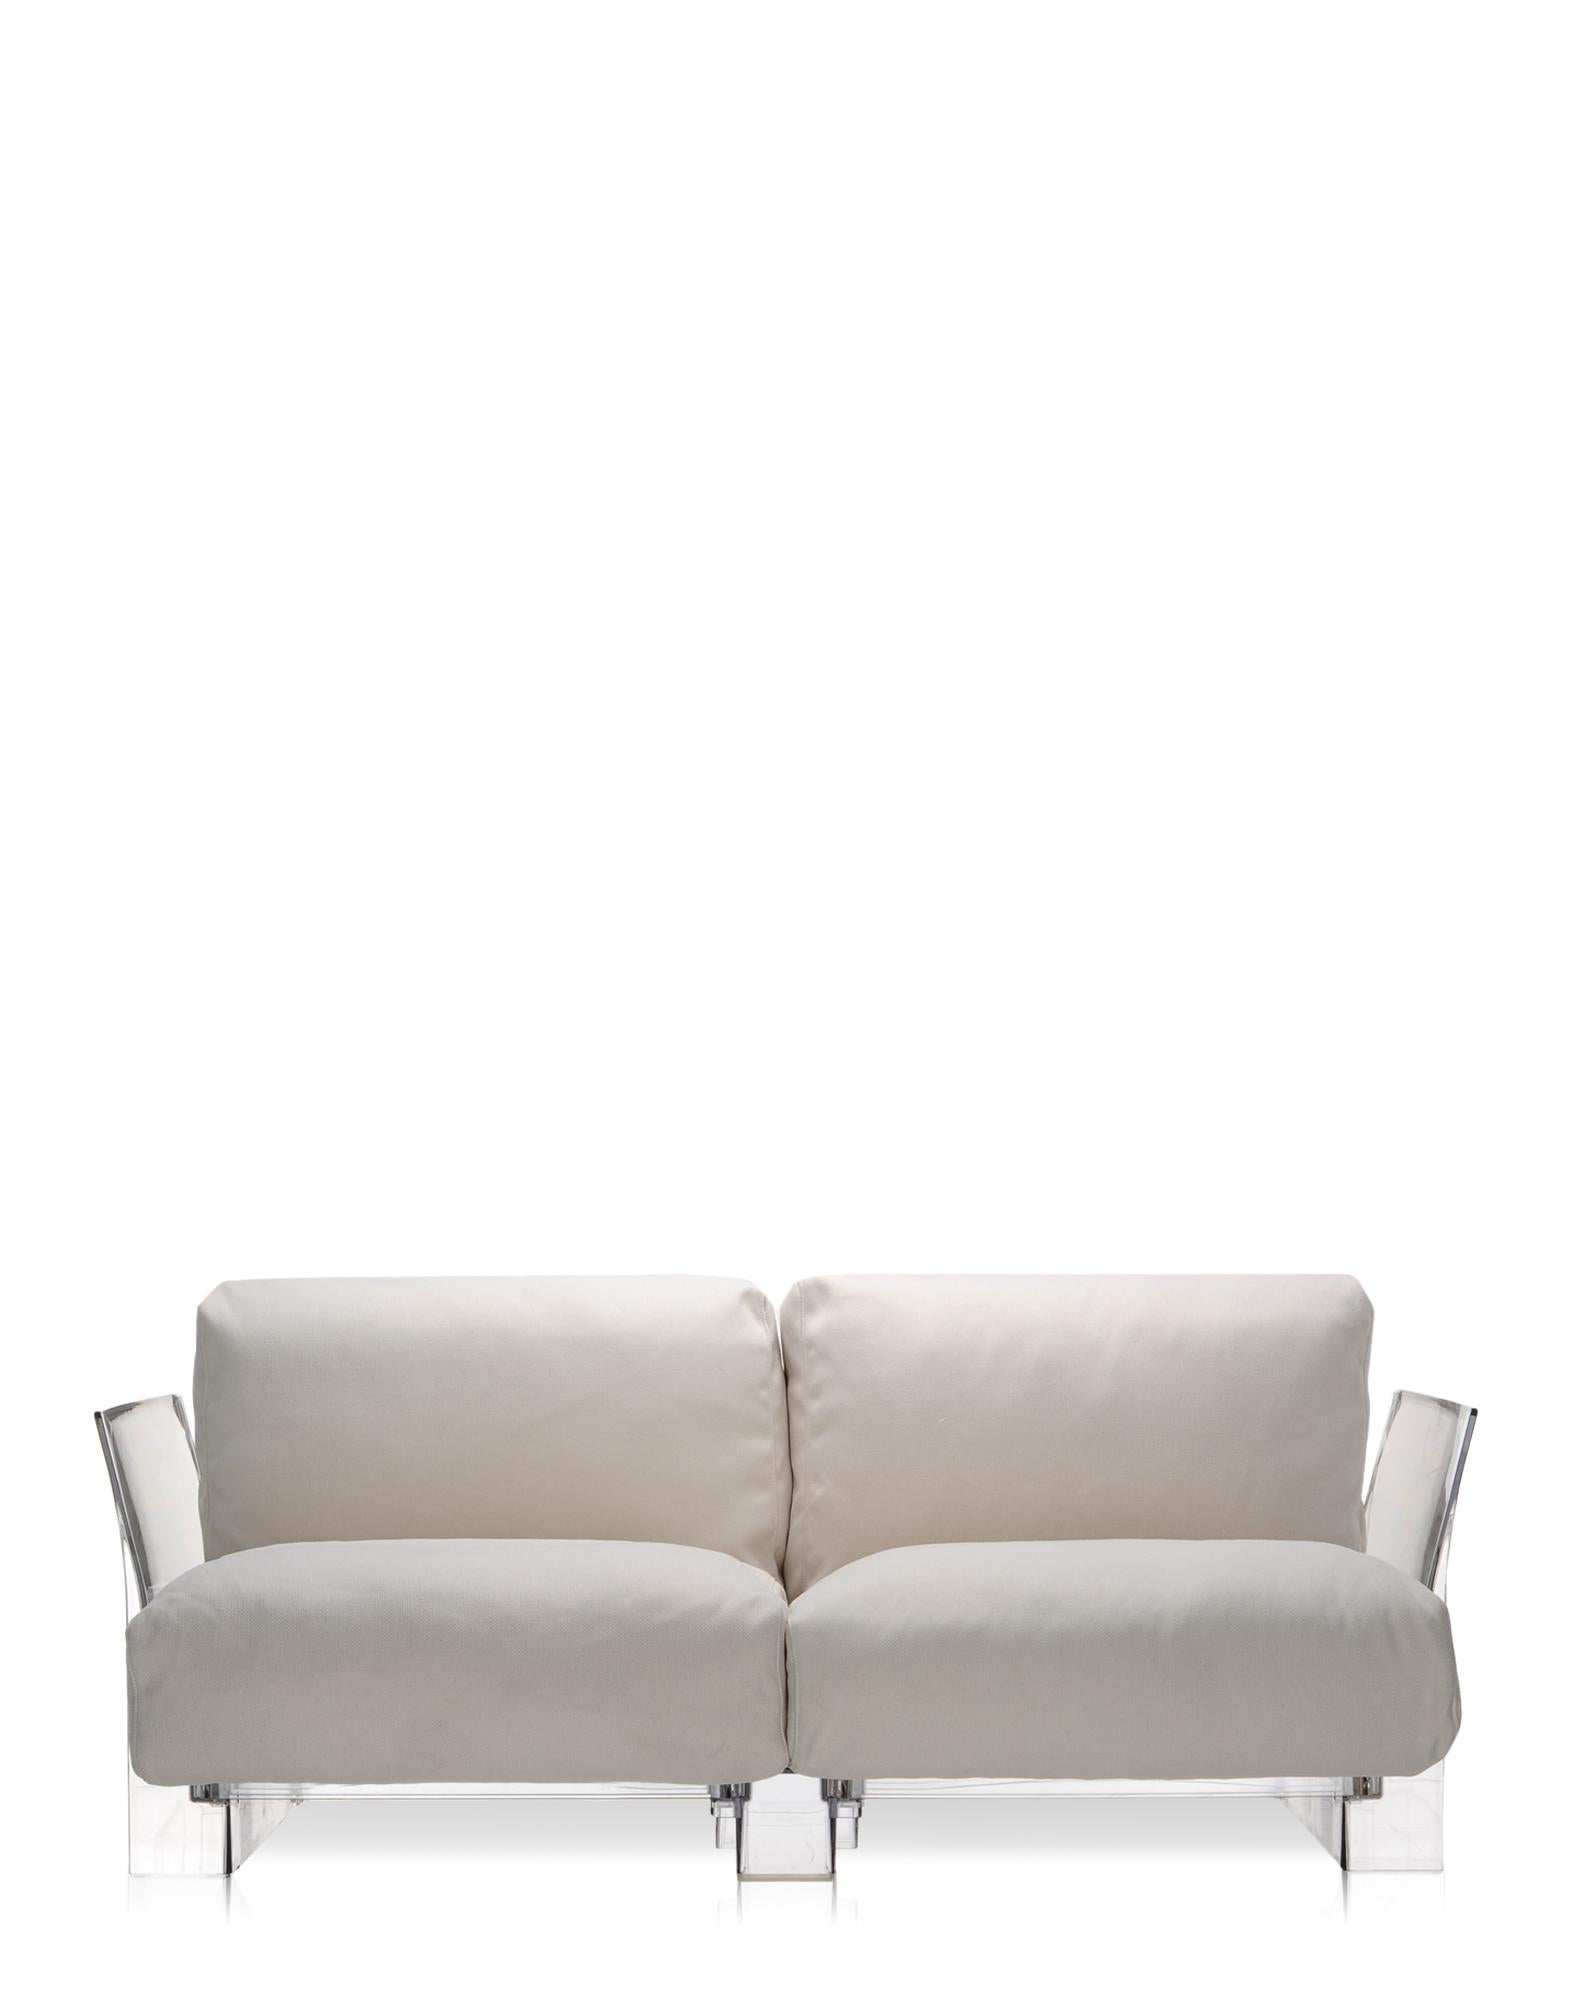 Das modulare Sofa für den Außenbereich ist mit flüchtigen Profilen ausgestattet, die sich durch große Sitz- und Rückenkissen auszeichnen, die es weich und bequem machen und aus Stoffen bestehen, die speziell für den Außenbereich konzipiert wurden.